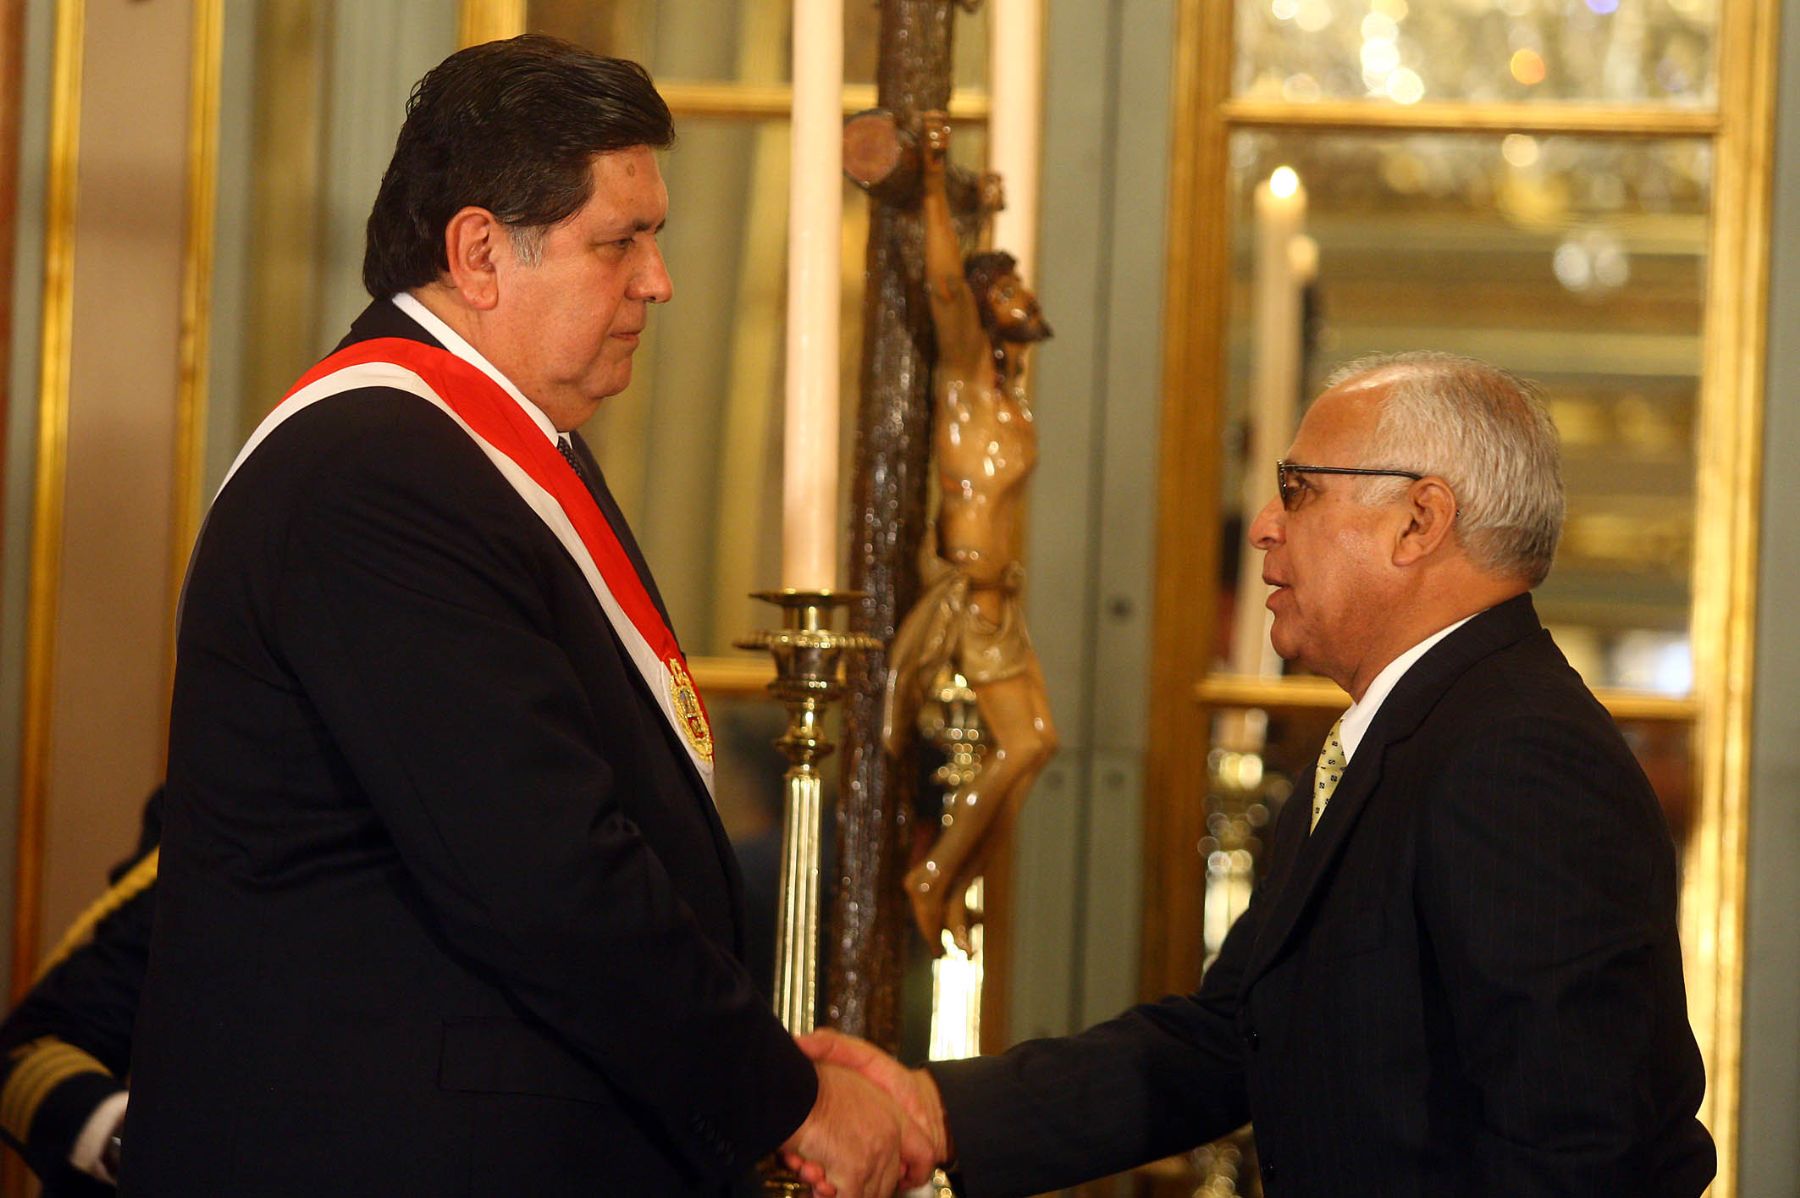 El Presidente de la República, Alan García Pérez, tomó juramento  a Remigio Hernani, como nuevo Ministro del Interior. Foto: ANDINA / Alberto Orbegoso